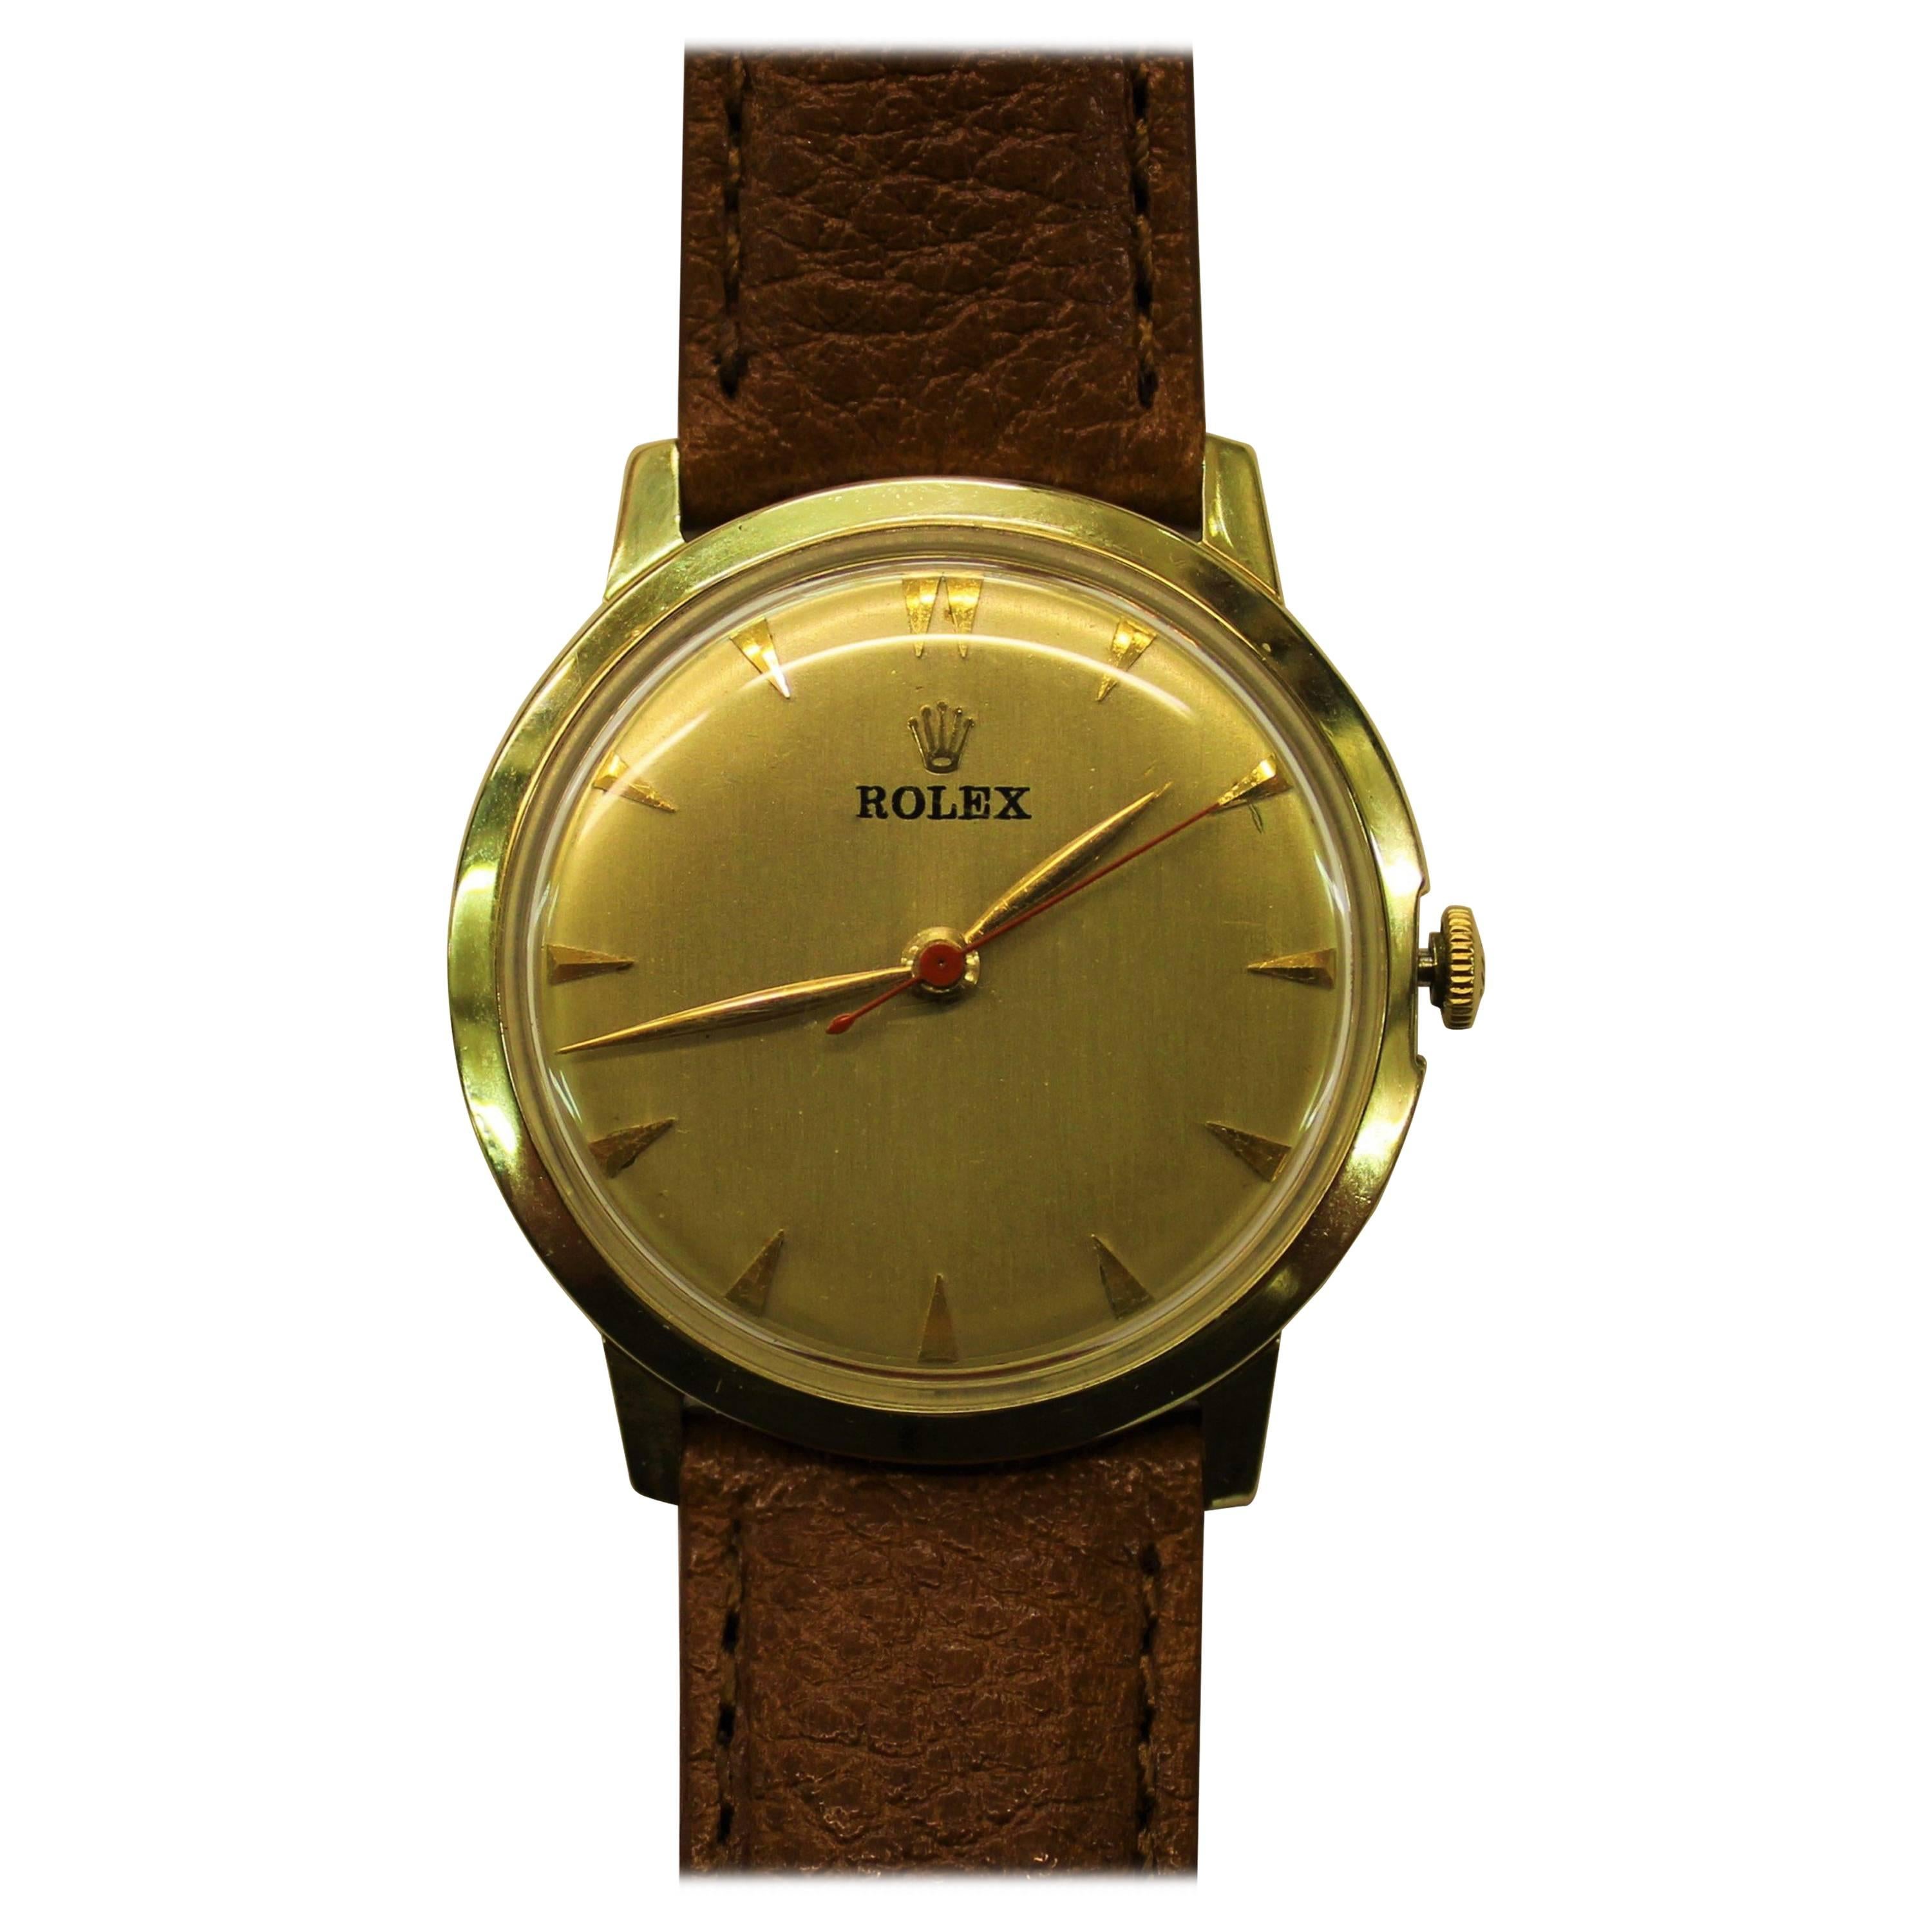 14-Karat Yellow Gold Rolex Men's Dress Watch